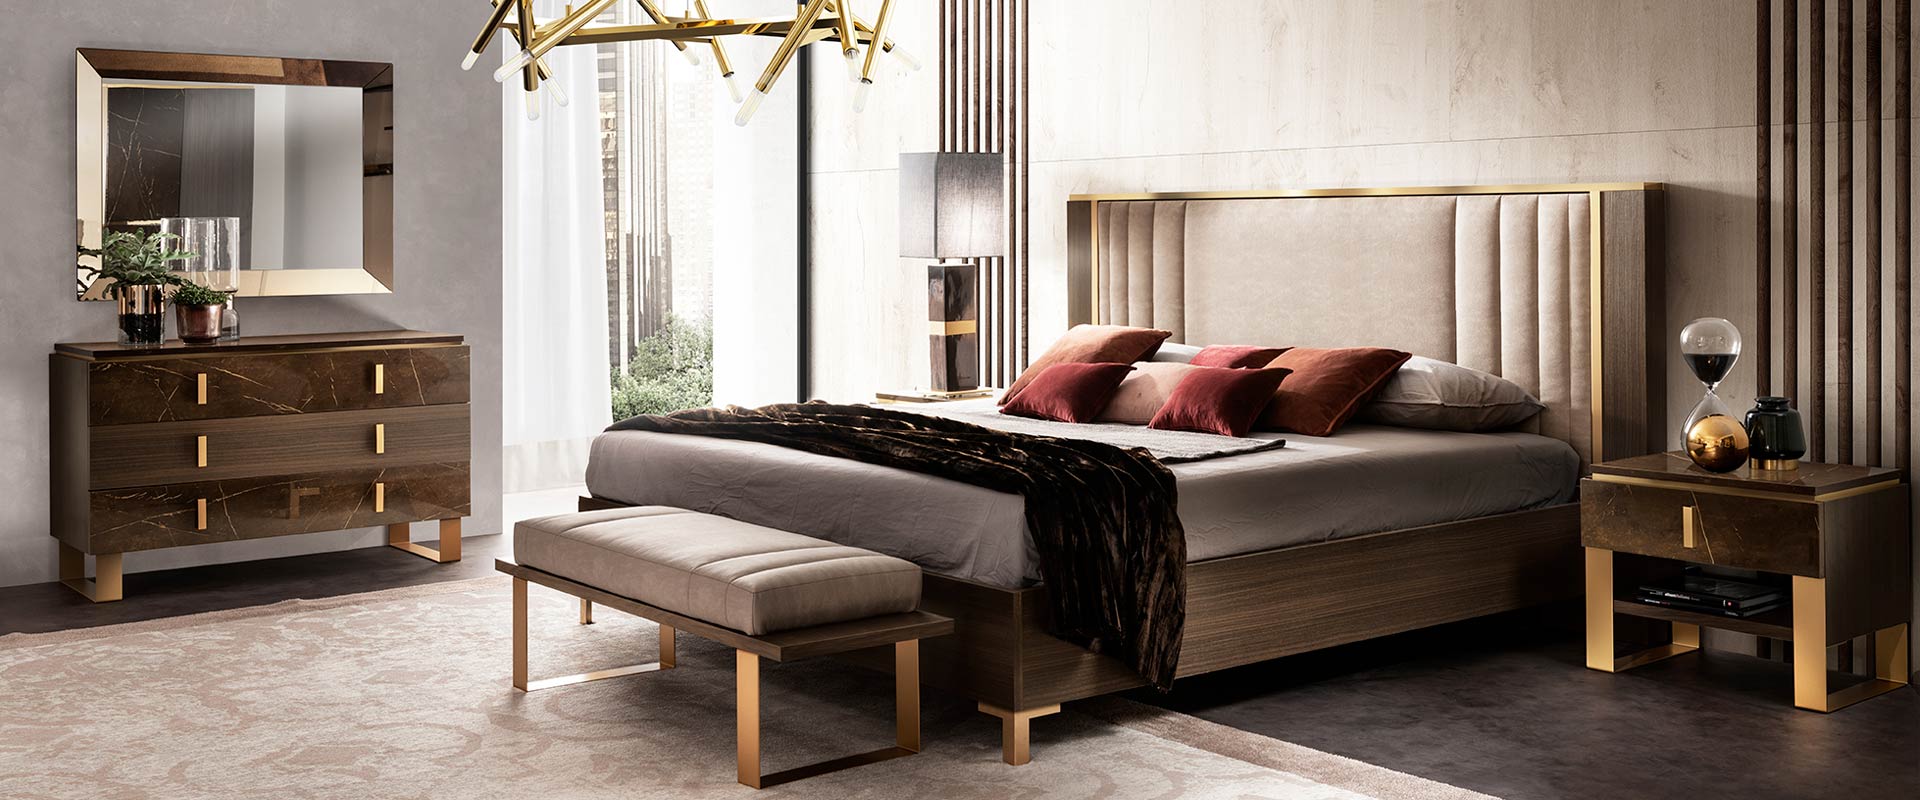 Adora interiors essenza bedroom wooden bed with dresser